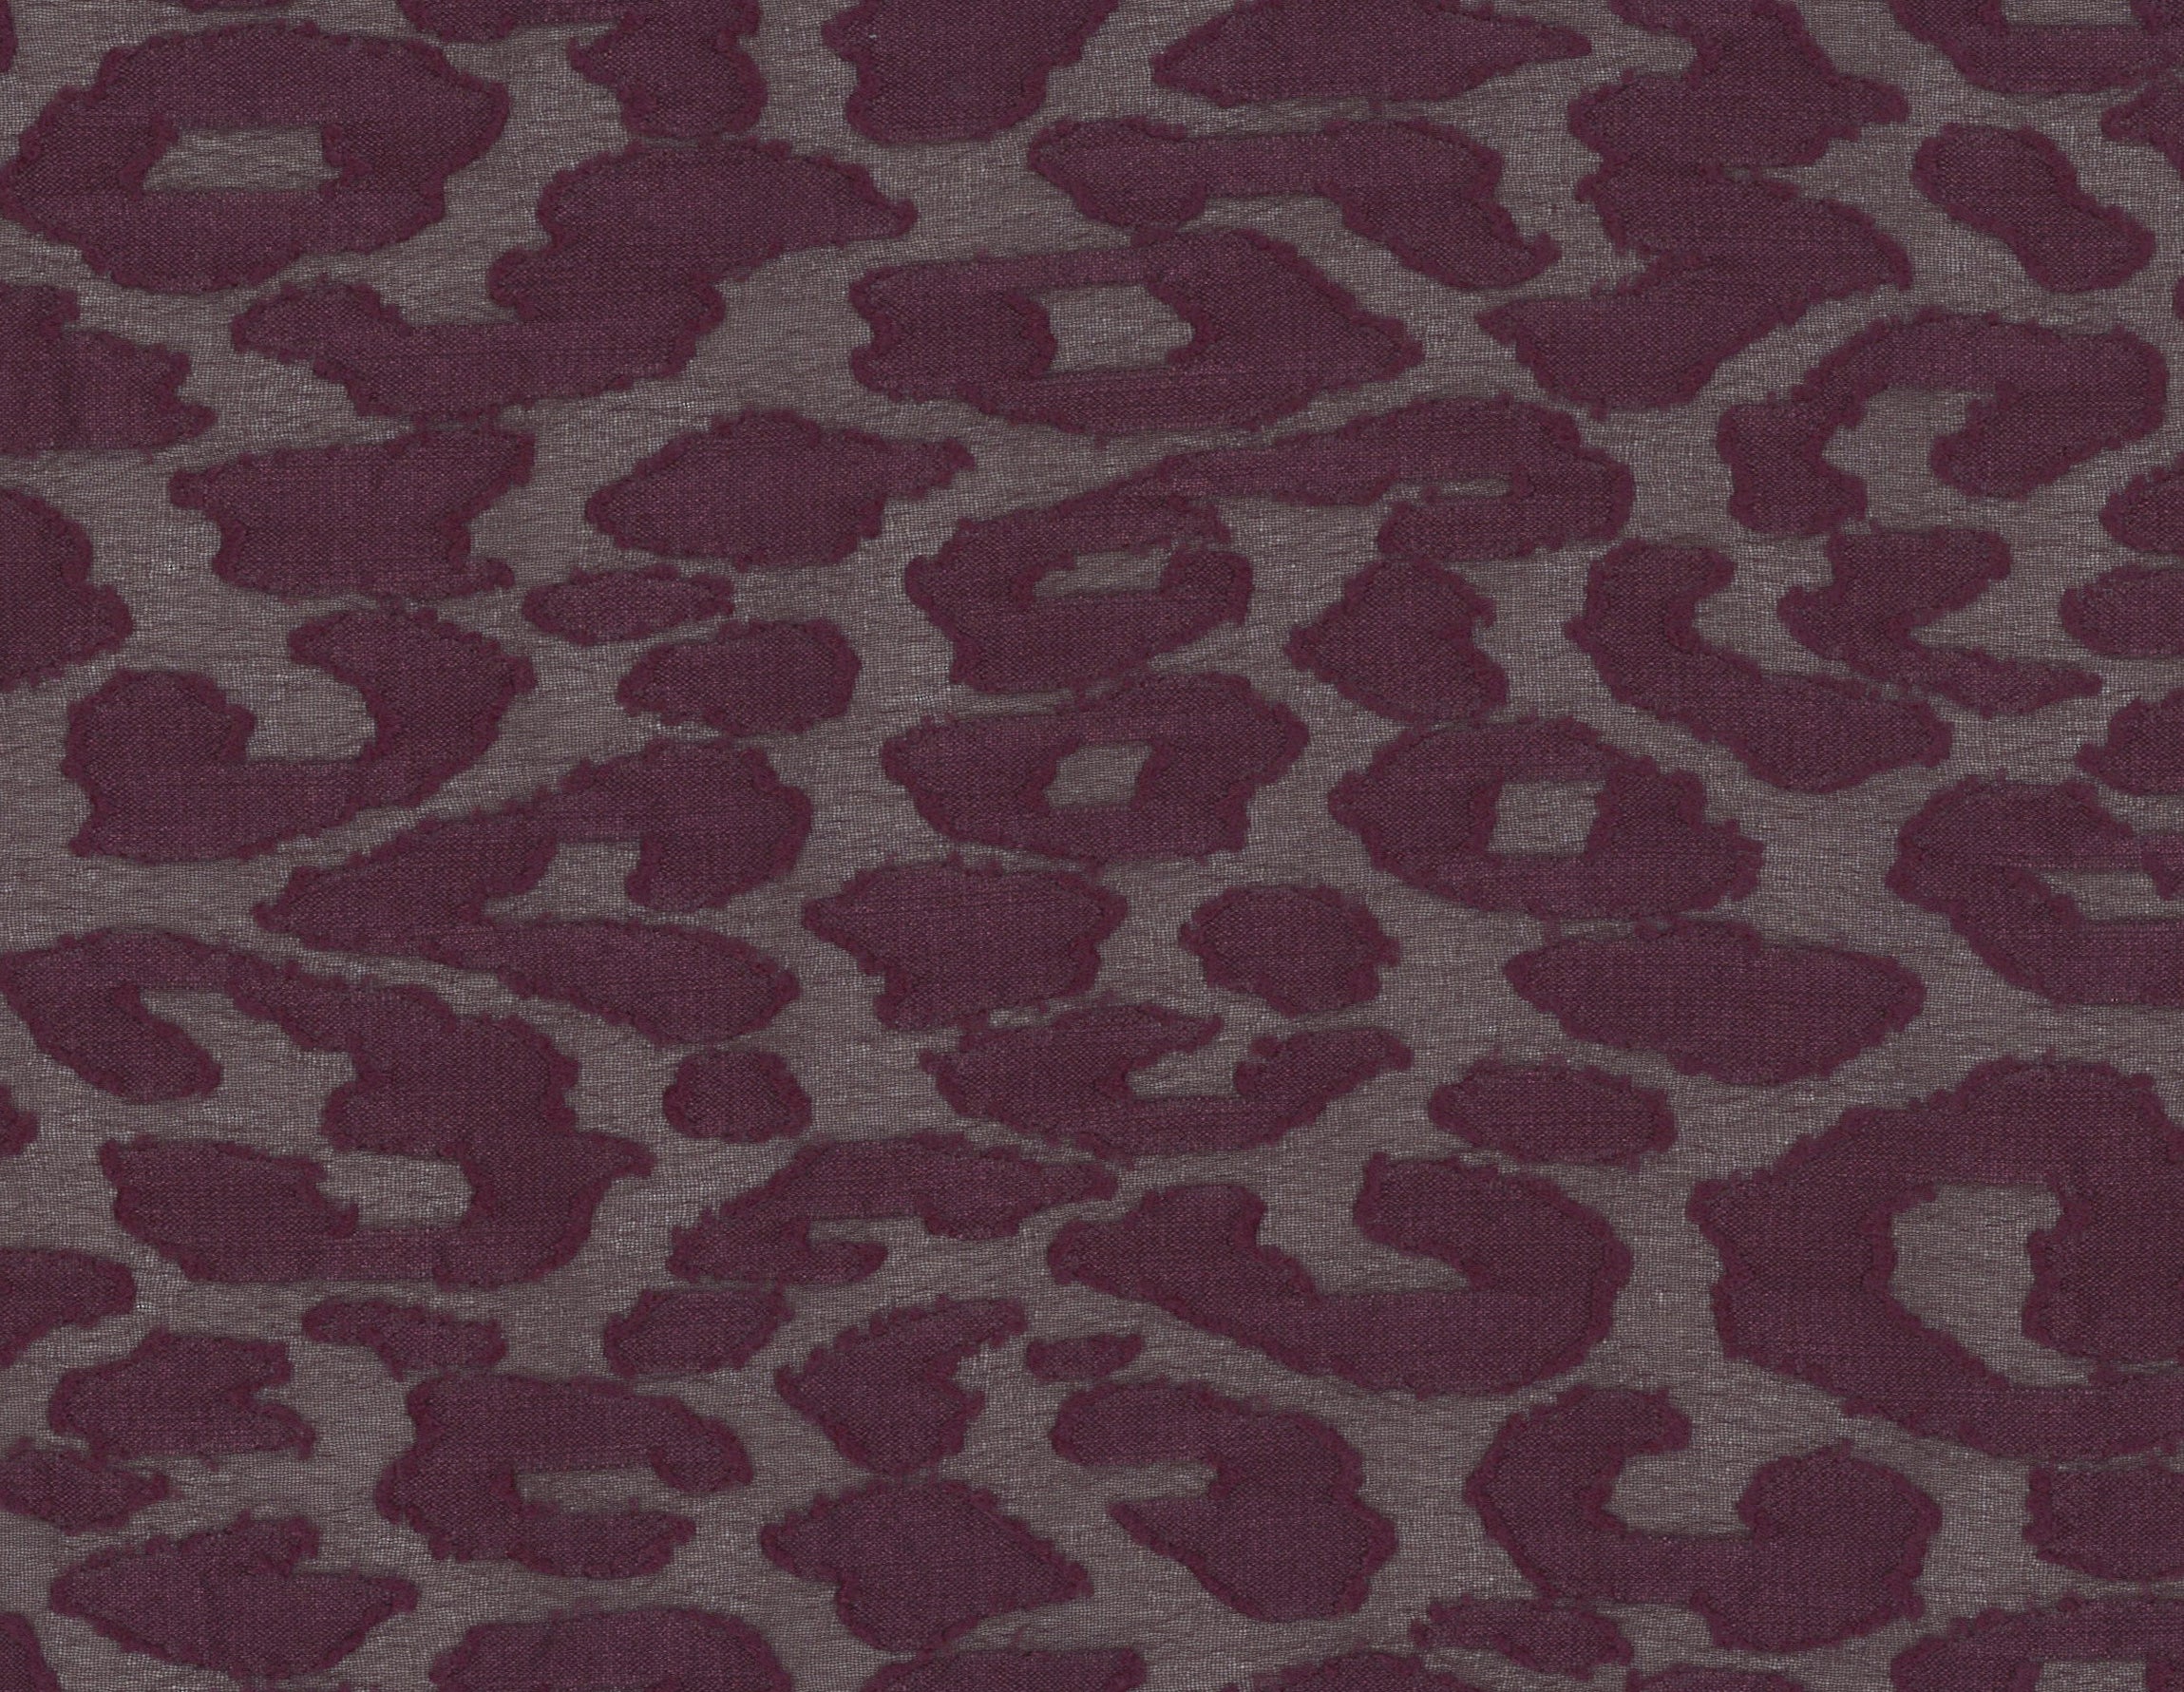 32001-07 Purple Chiffon Polyester Spots Jacquard Burn Out Plain Dyed 100% burn out jacquard polyester purple woven Chiffon, Jacquard, Burn-Out - knit fabric - woven fabric - fabric company - fabric wholesale - fabric b2b - fabric factory - high quality fabric - hong kong fabric - fabric hk - acetate fabric - cotton fabric - linen fabric - metallic fabric - nylon fabric - polyester fabric - spandex fabric - chun wing hing - cwh hk - fabric worldwide ship - 針織布 - 梳織布 - 布料公司- 布料批發 - 香港布料 - 秦榮興